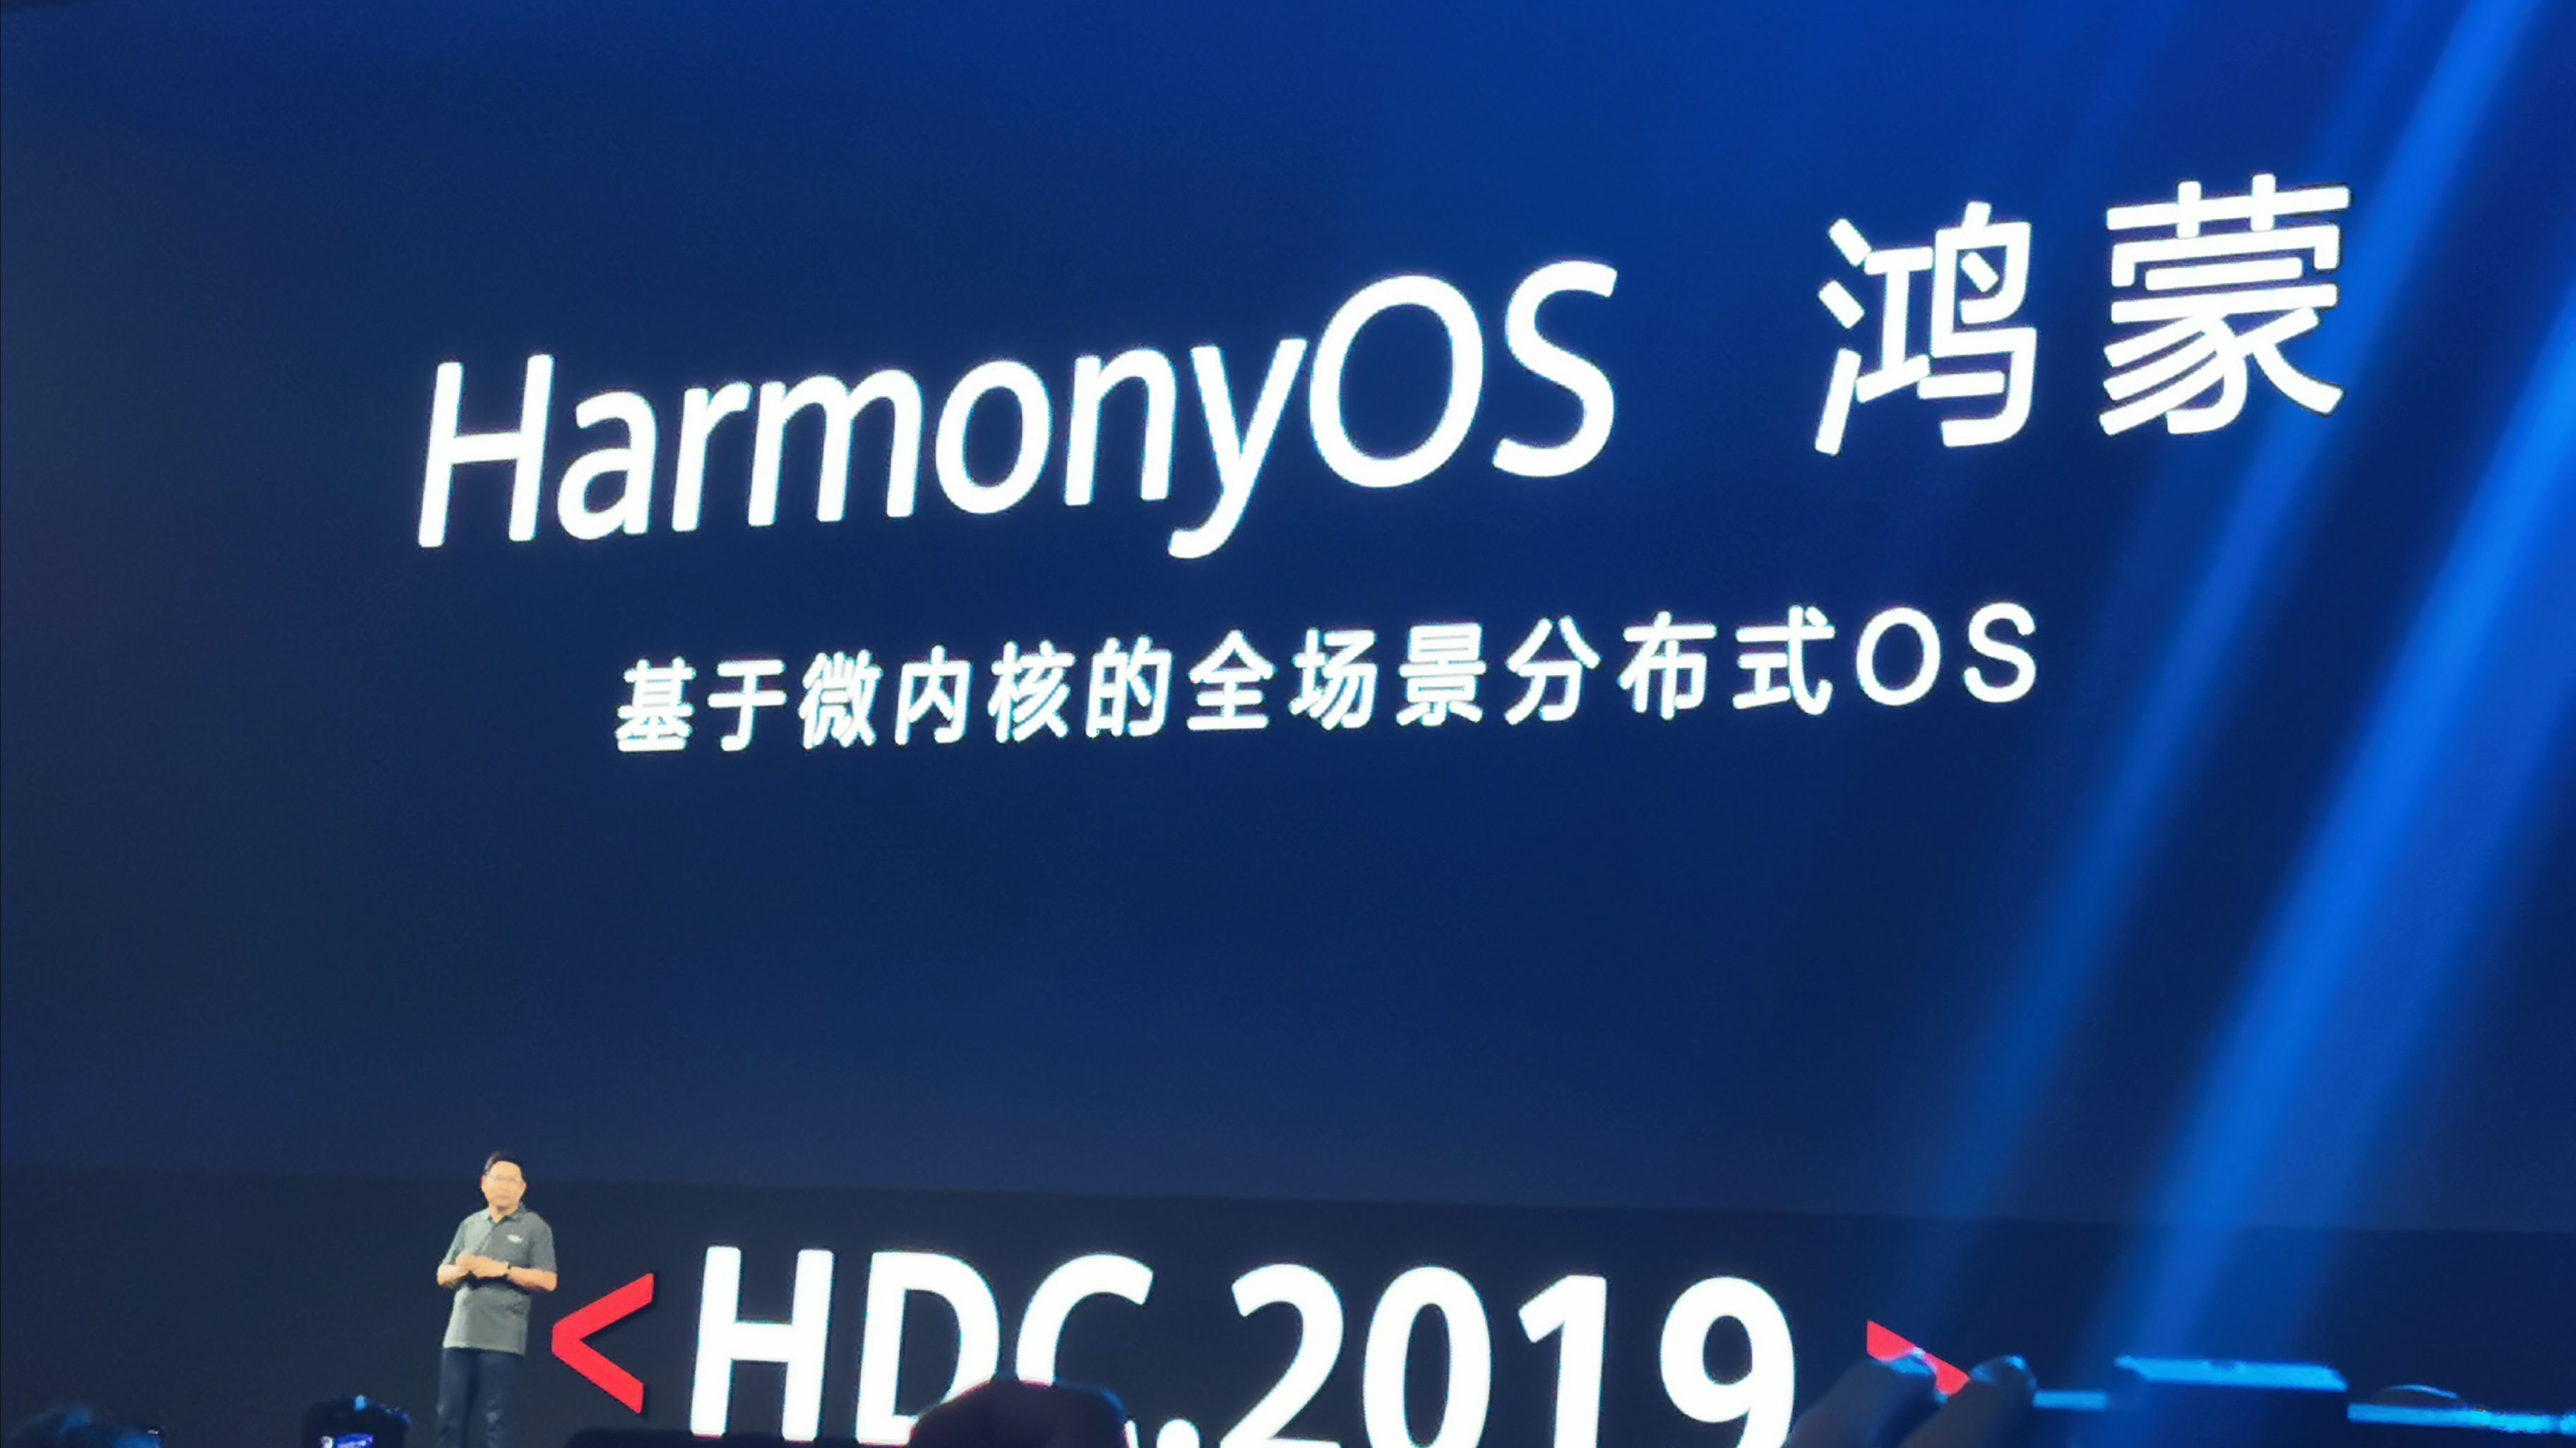 Huawei เปิดตัว HarmonyOS สามารถใช้ได้กับทุกอุปกรณ์ไม่ว่าจะเป็นสมาร์ทโฟน, สมาร์ทวอทช์ หรืออุปกรณ์ IoT ต่างๆ